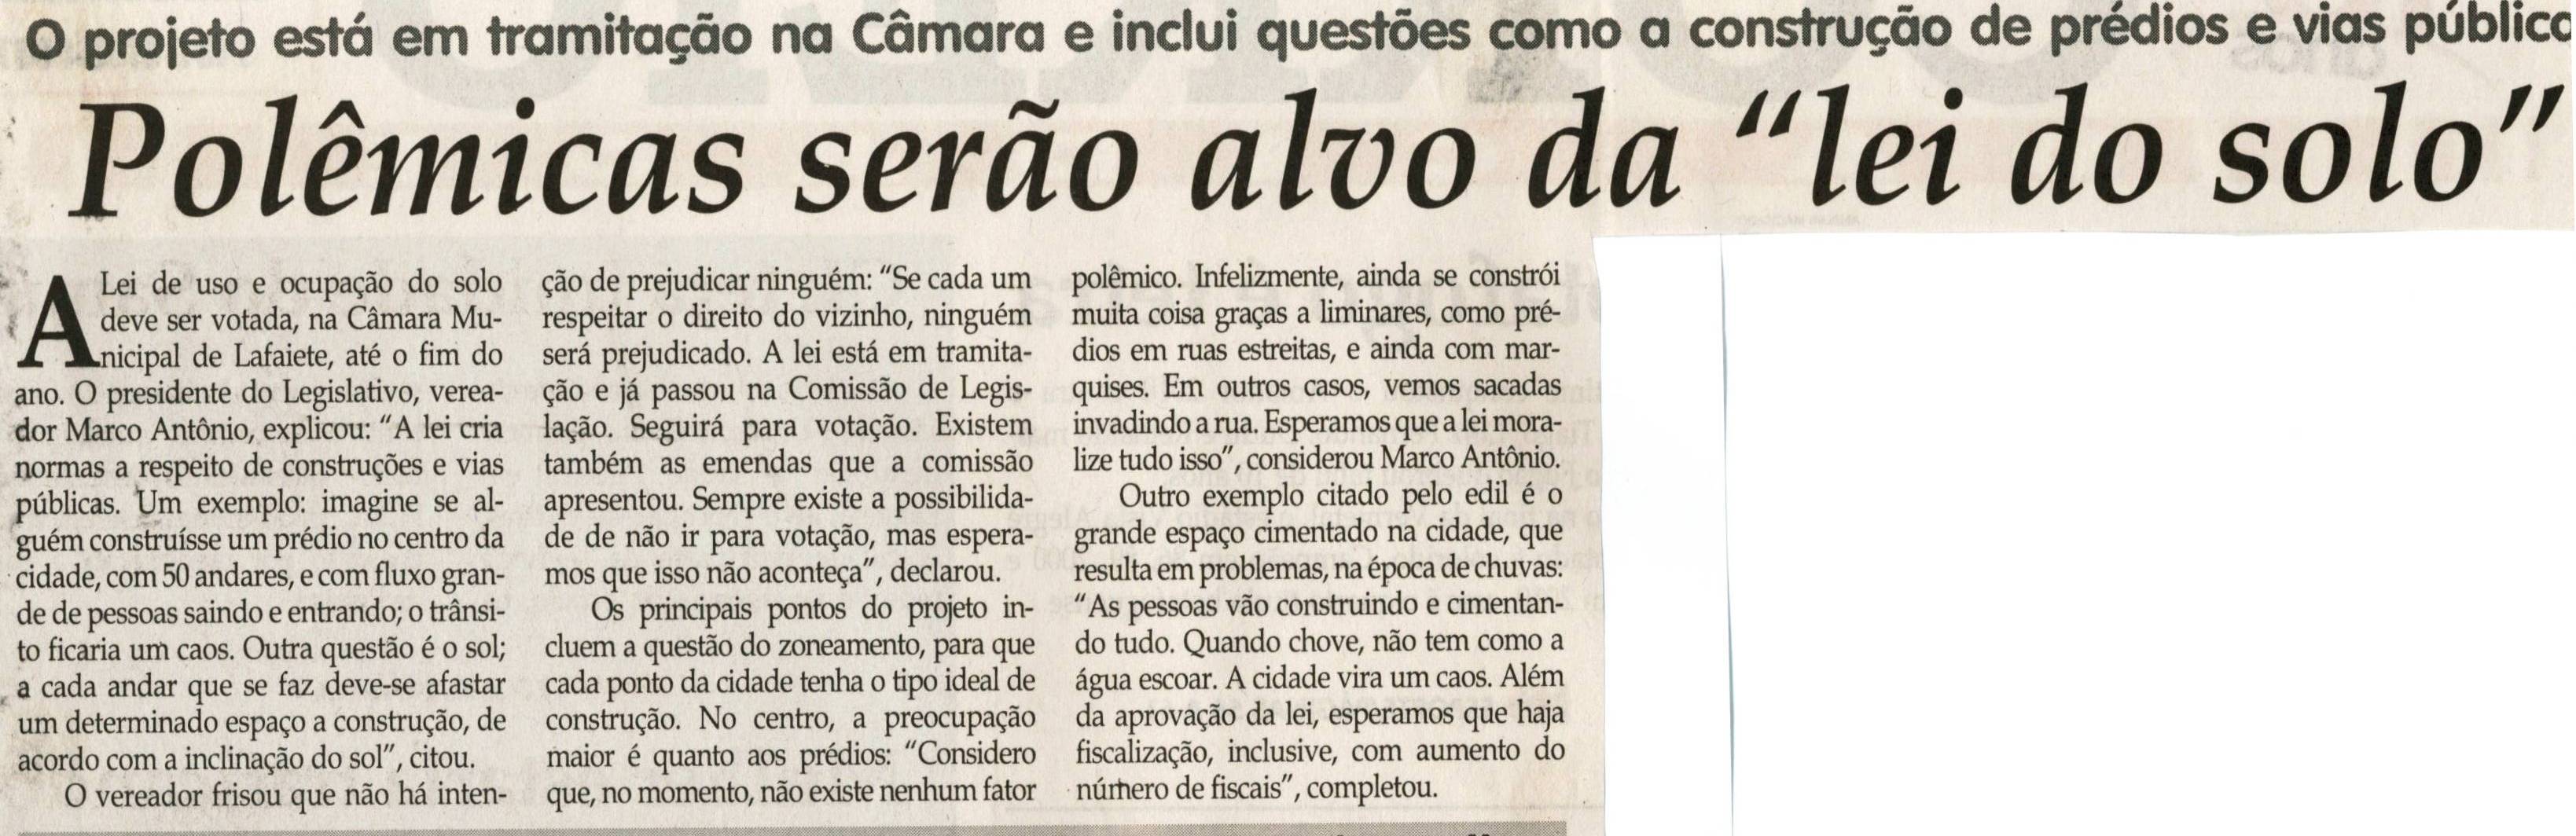 Polêmicas serão alvo da "lei do solo". Jornal Correio da Cidade, Conselheiro Lafaiete, 20 nov. 2010, p. 02.